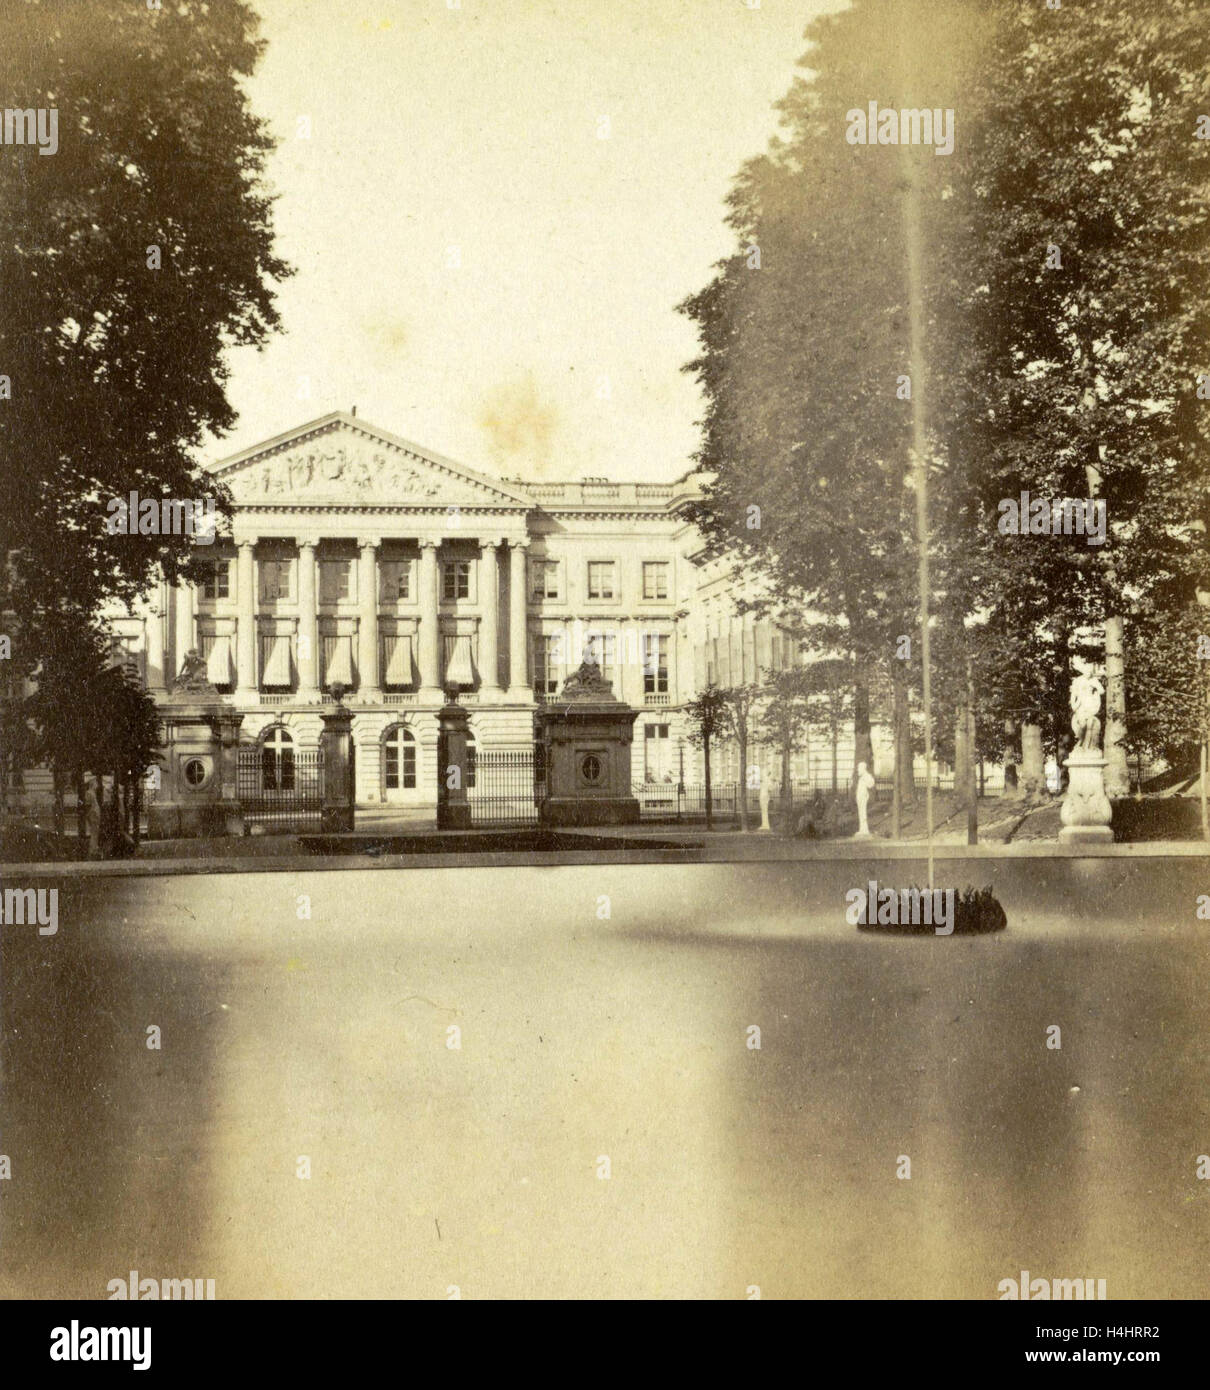 Brüssel, das Royal Park und Palast der Nation-Kammer der Abgeordneten, Belgien, Jules Queval, 1860-1880 Stockfoto